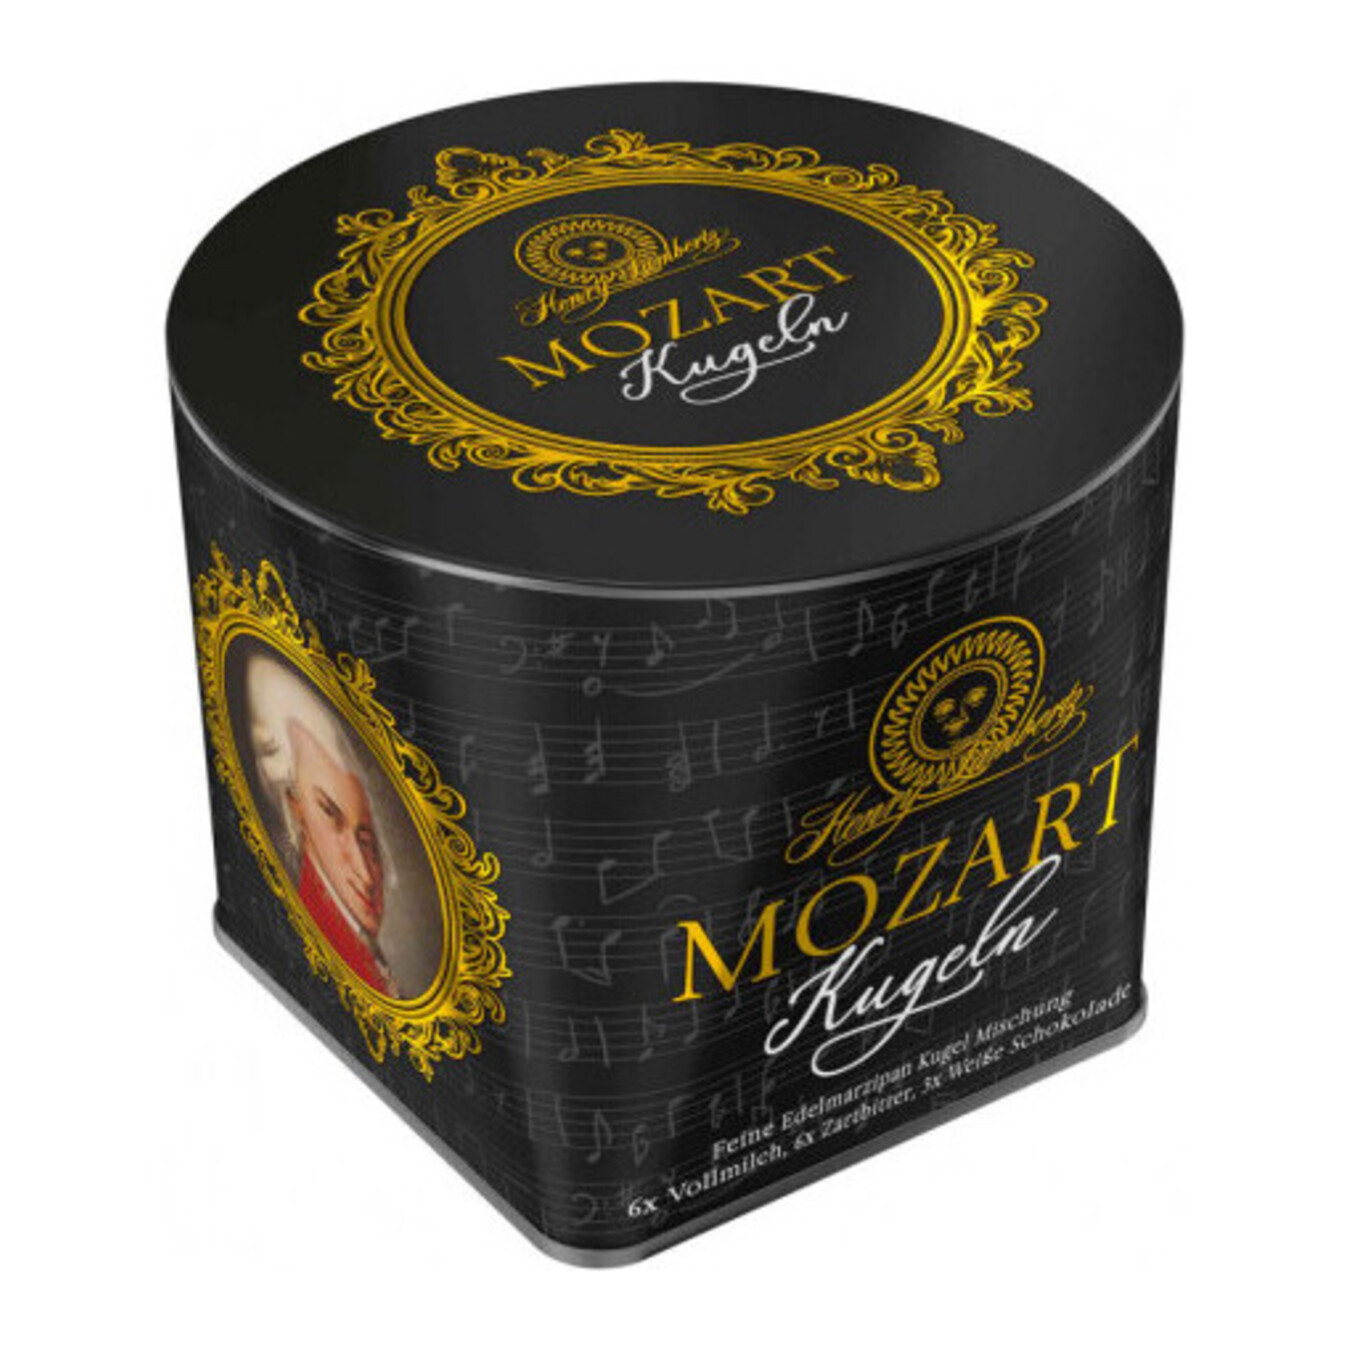 Цукерки Mozart праліне мікс в жестяній коробці 300г